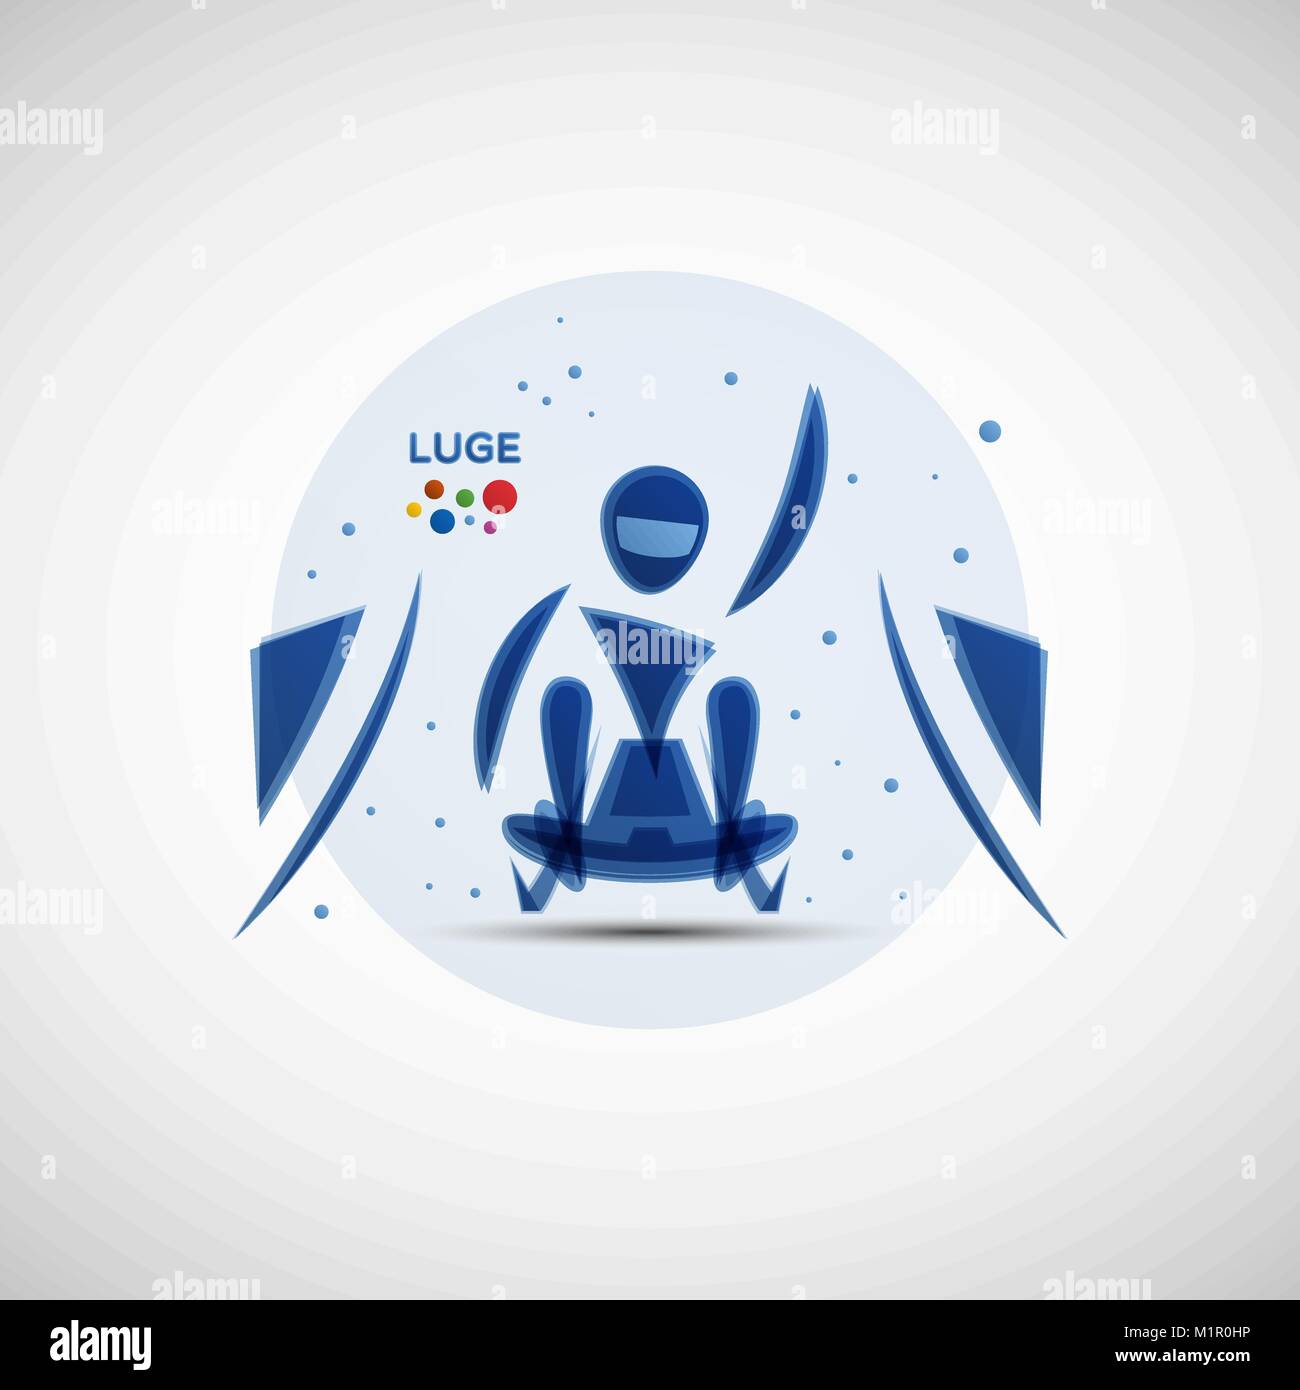 Bannière de championnat de luge. L'icône de sports d'hiver. Abstract sportsman silhouette. Vector illustration d'athlète luge assis sur le traîneau à terminer Illustration de Vecteur